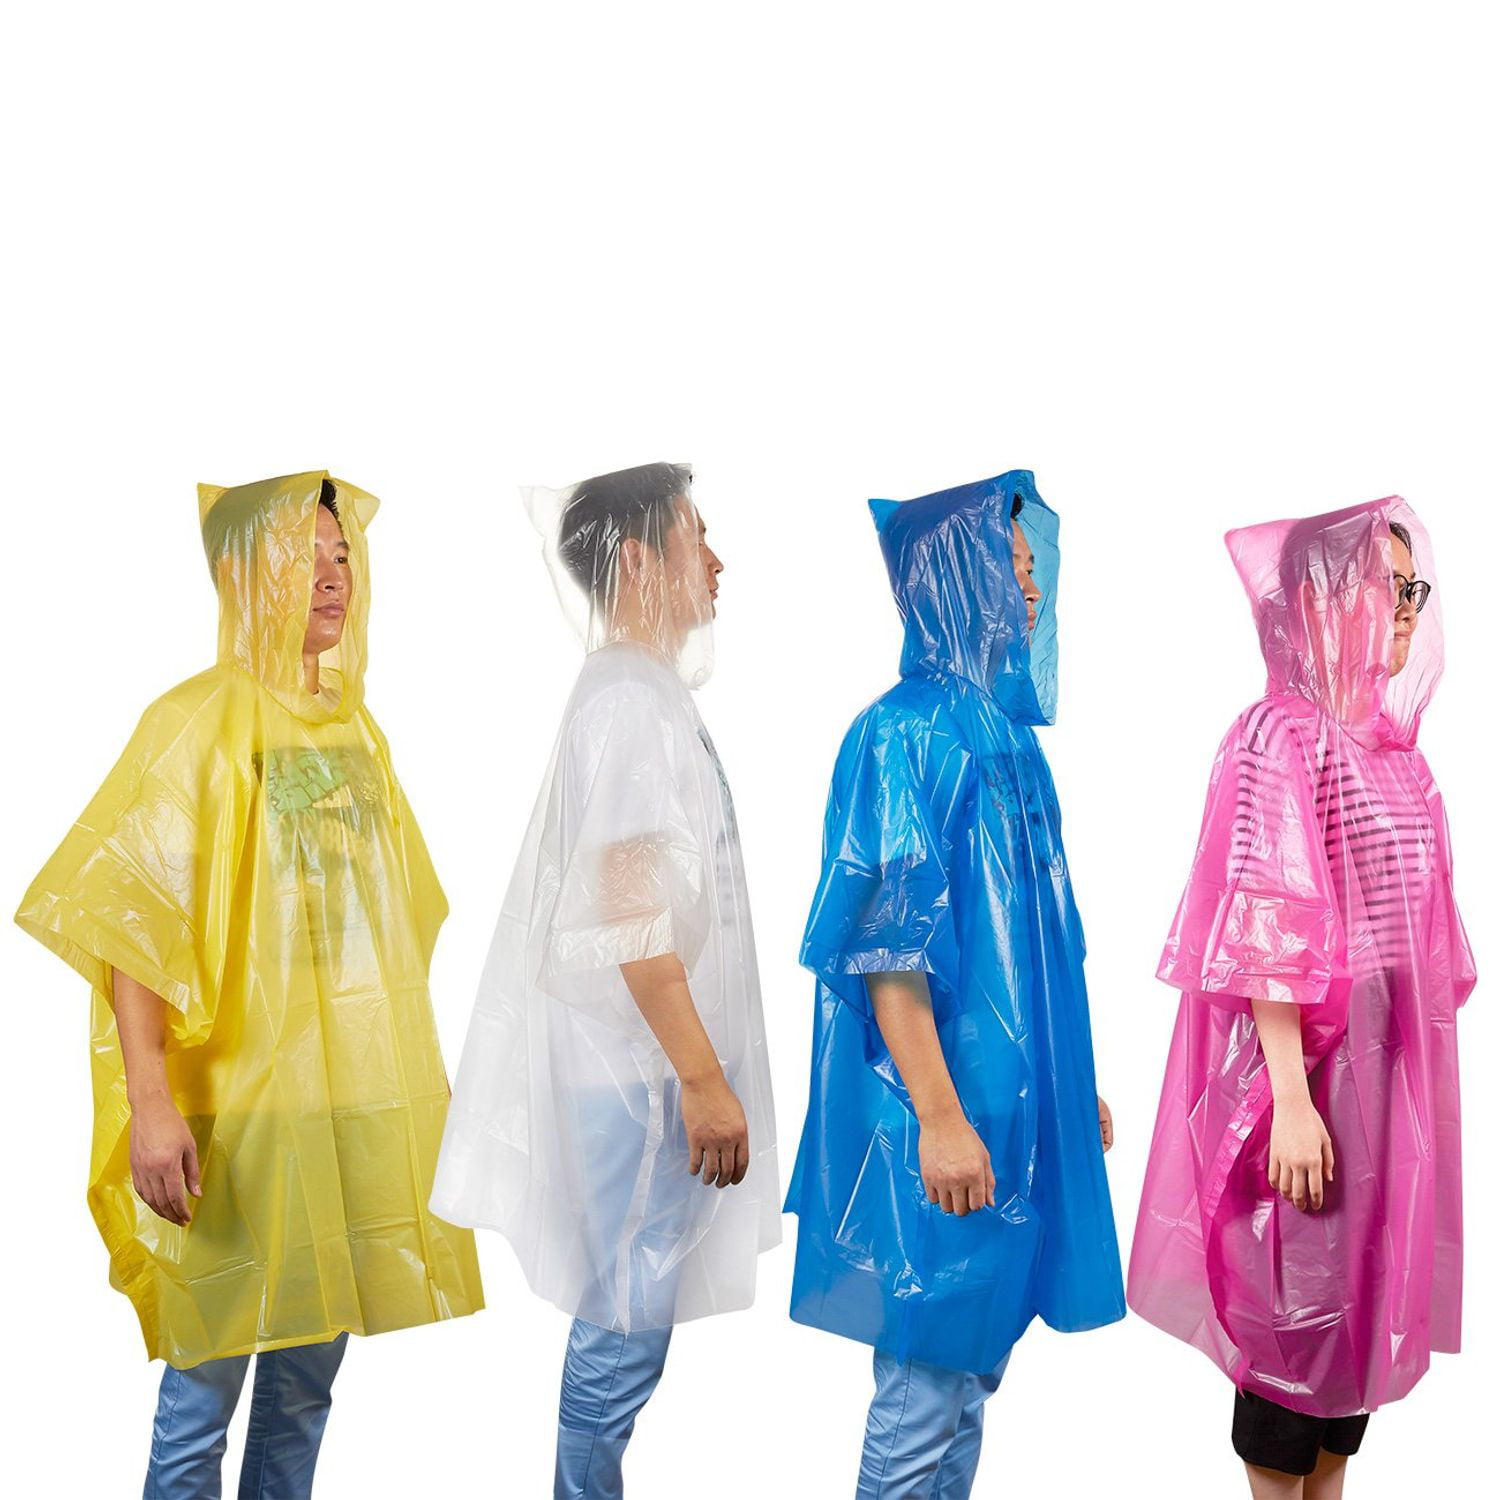 Details about   Hooded Ponchos Disposable Raincoat For Men Women Travel Portable Rain Wear Suits